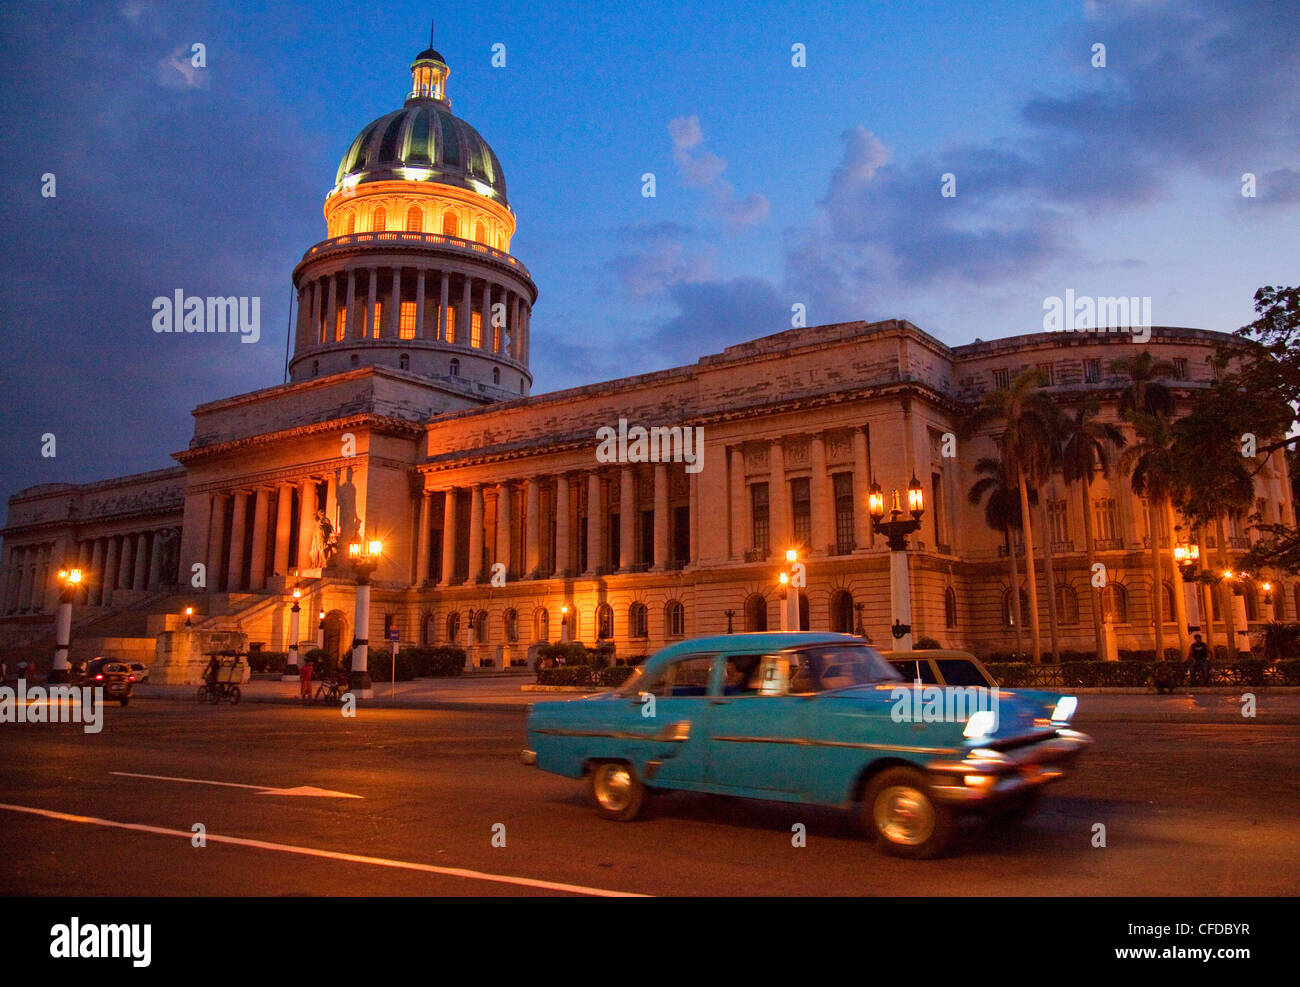 Traditionelle alte amerikanische Auto beschleunigt vorbei an dem Capitolio, bei Nacht, Havanna, Kuba, Karibik, Mittelamerika Stockfoto